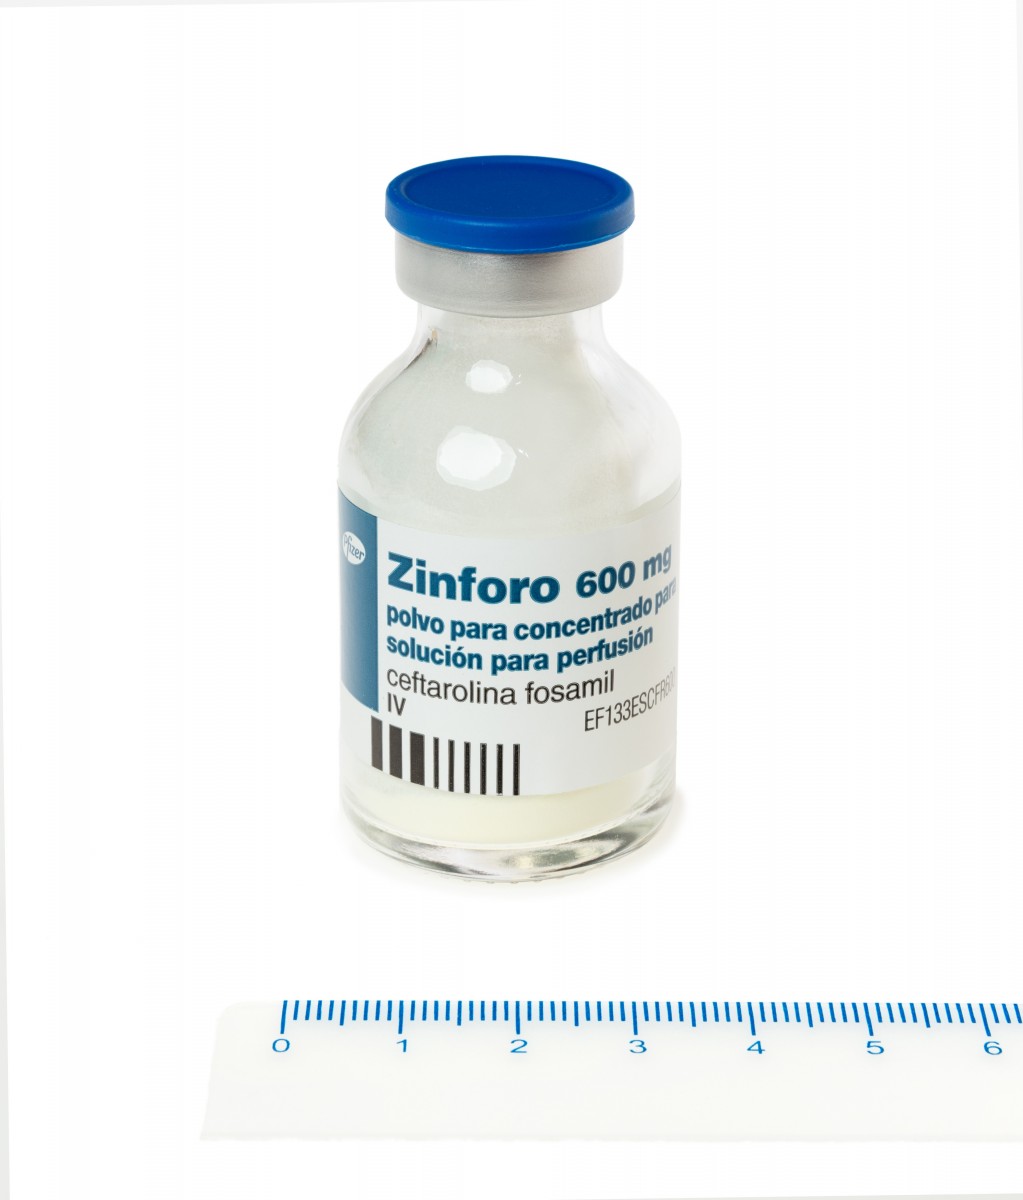 ZINFORO 600 MG POLVO PARA CONCENTRADO PARA SOLUCION PARA PERFUSION, 10 viales fotografía de la forma farmacéutica.